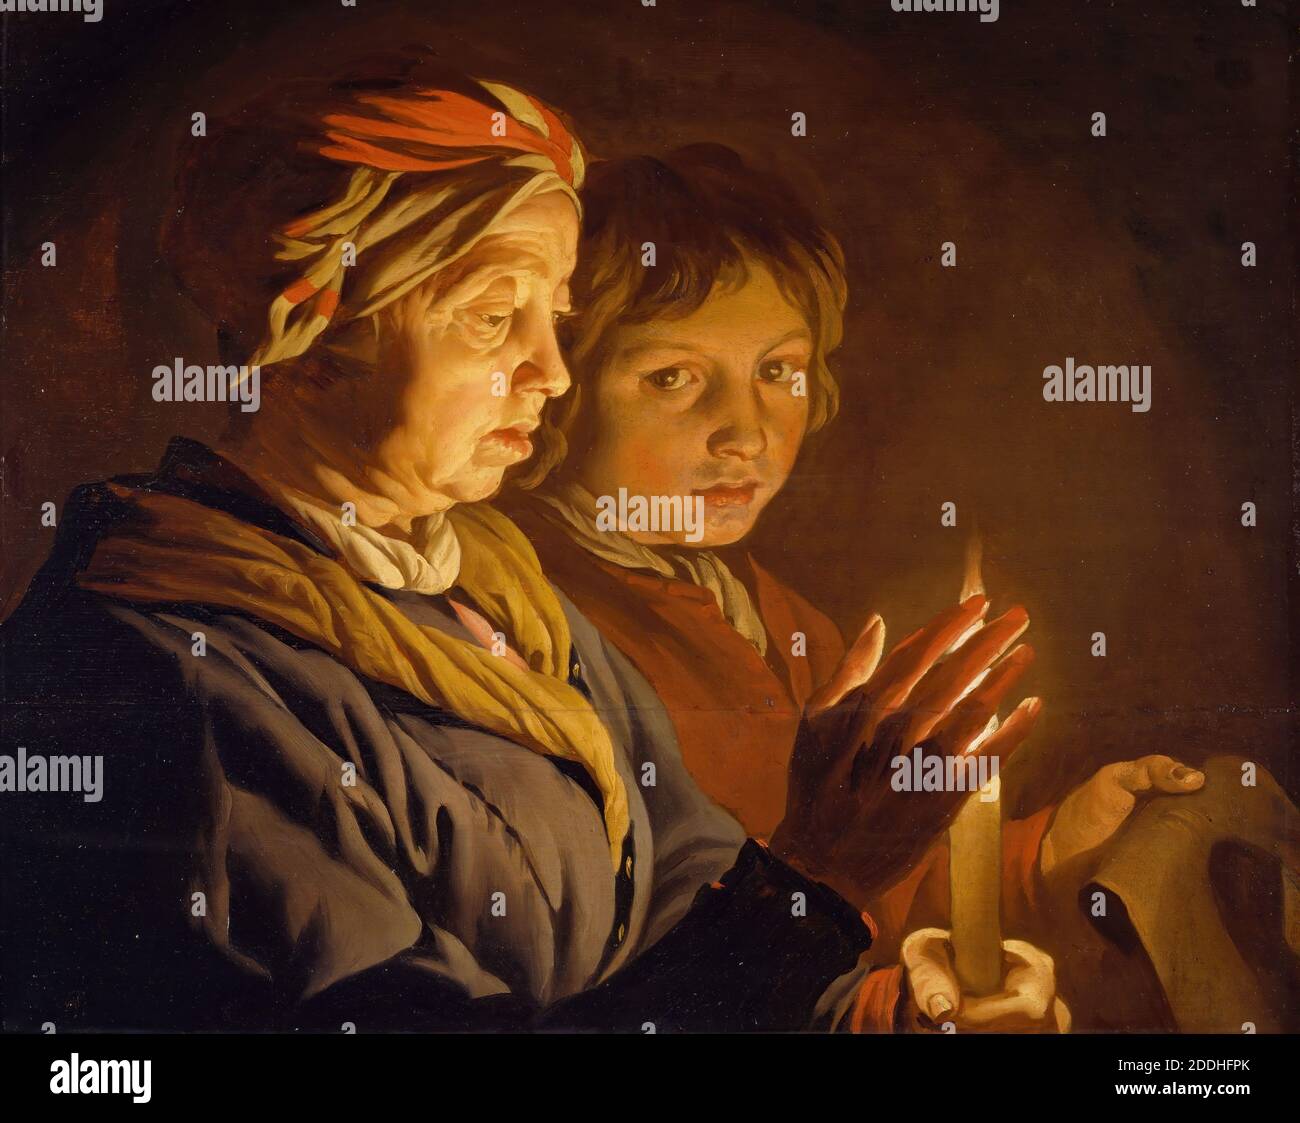 Une vieille femme et UN garçon par Candlelight, 1630-1650 Matthias stom, peinture à l'huile, Baroque, bougie, Chiaroscuro, ancien maître, Femme, Garçon, flamme, lumière Banque D'Images